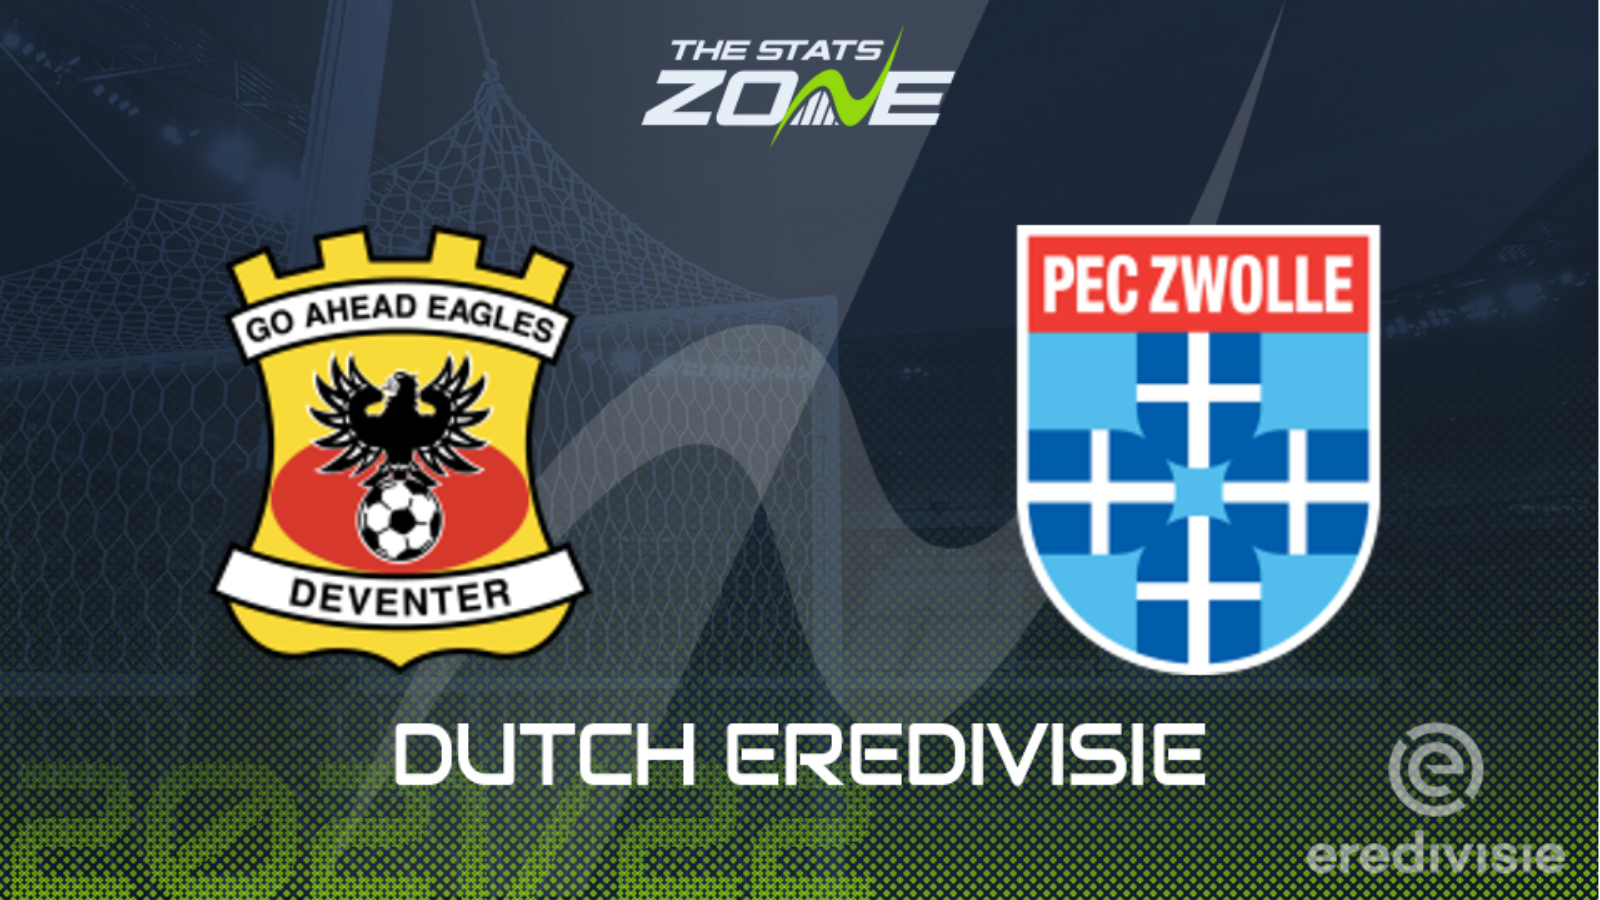 Хераклес алмело гоу эхед. Pec Zwolle. Рода Зволле. Logo Crest pec Zwolle. Гоу Эхед Иглс logo PNG.